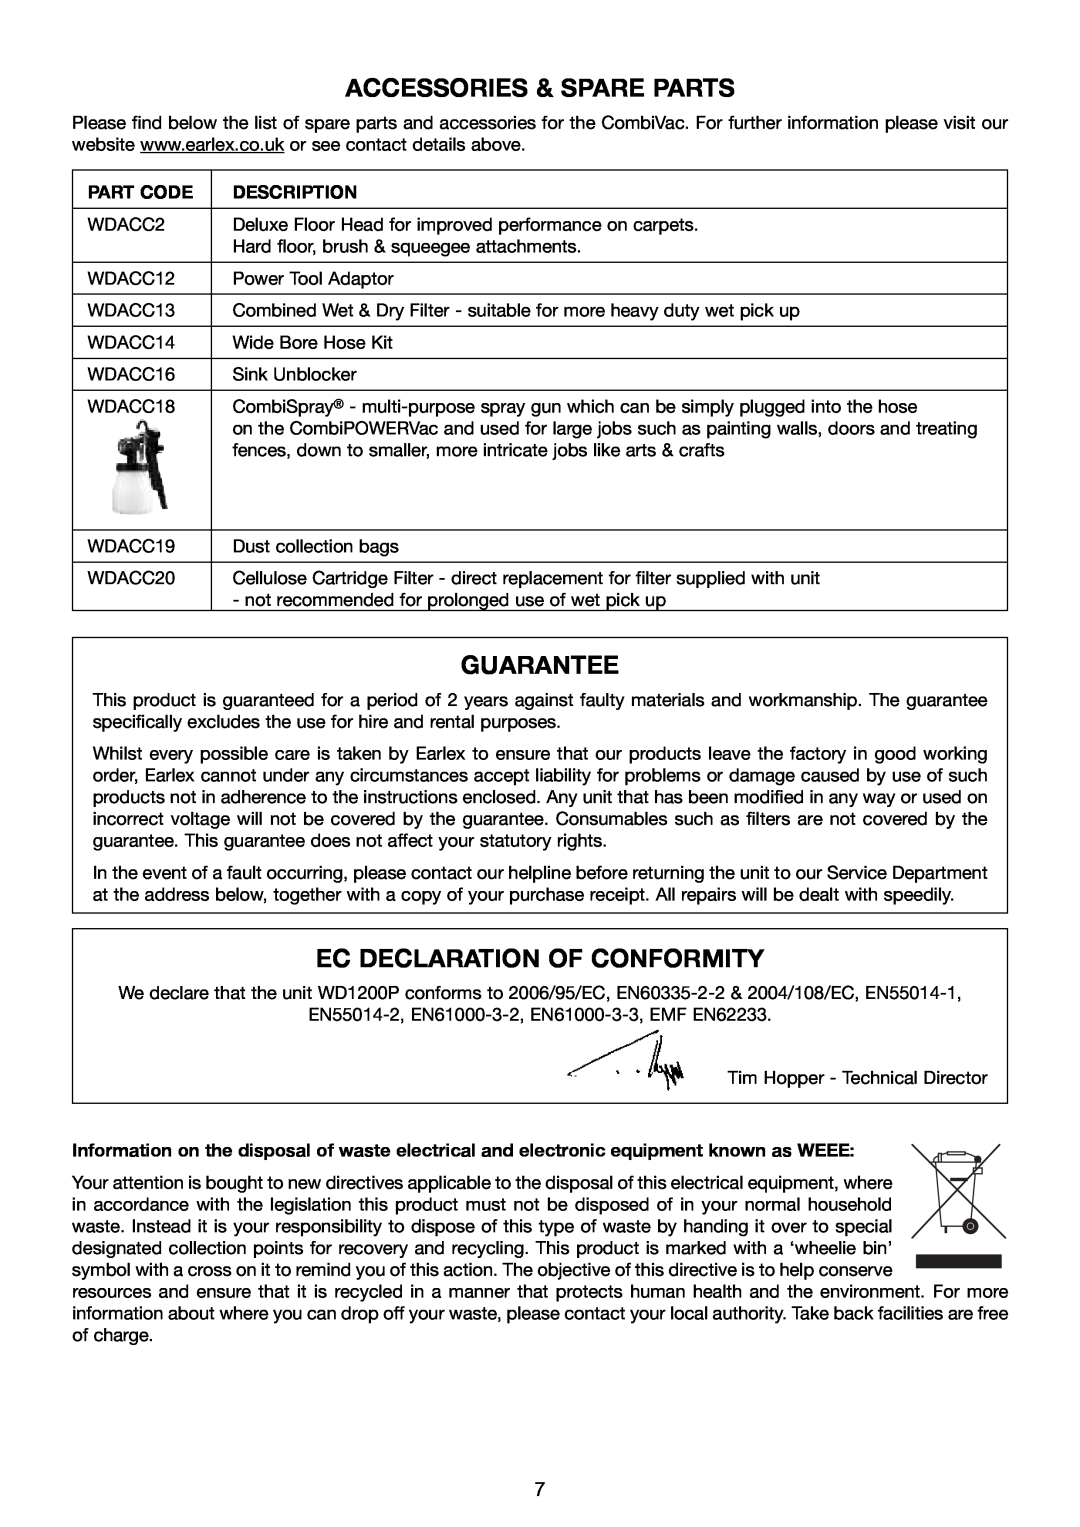 Earlex WD1200P manual Accessories & Spare Parts, gUARANTEE, Ec Declaration Of Conformity, Part Code, Description 